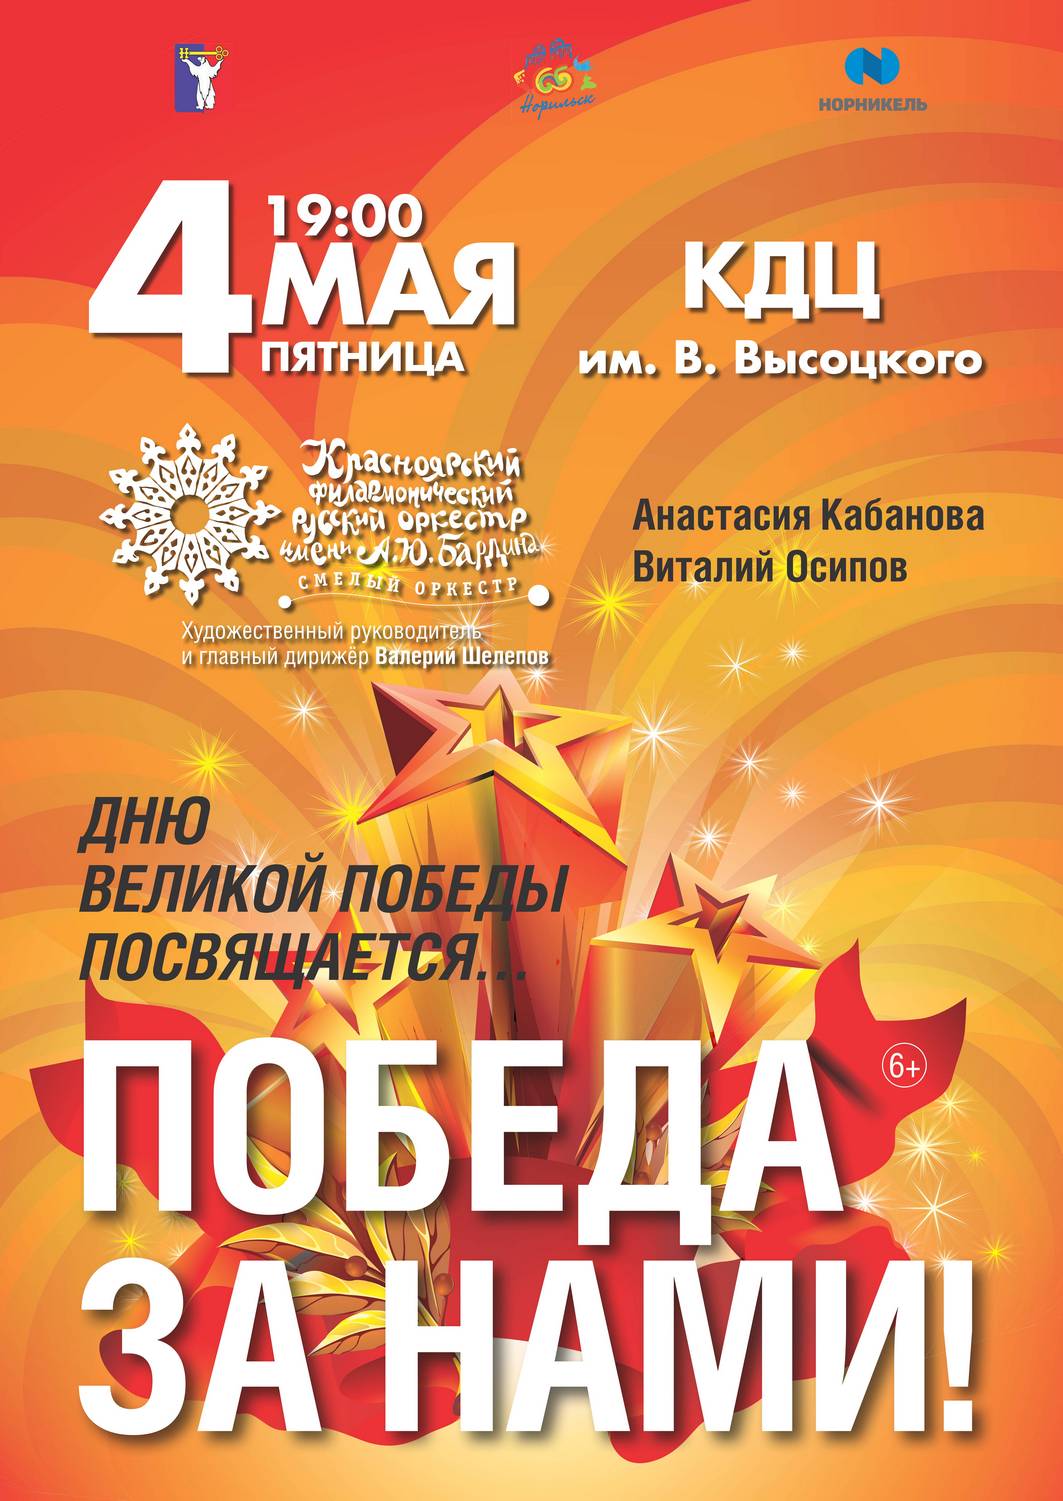 4 мая в 19.00 час. приглашаем на концертную программу Красноярского филармонического русского оркестра им. А.Ю. Бардина